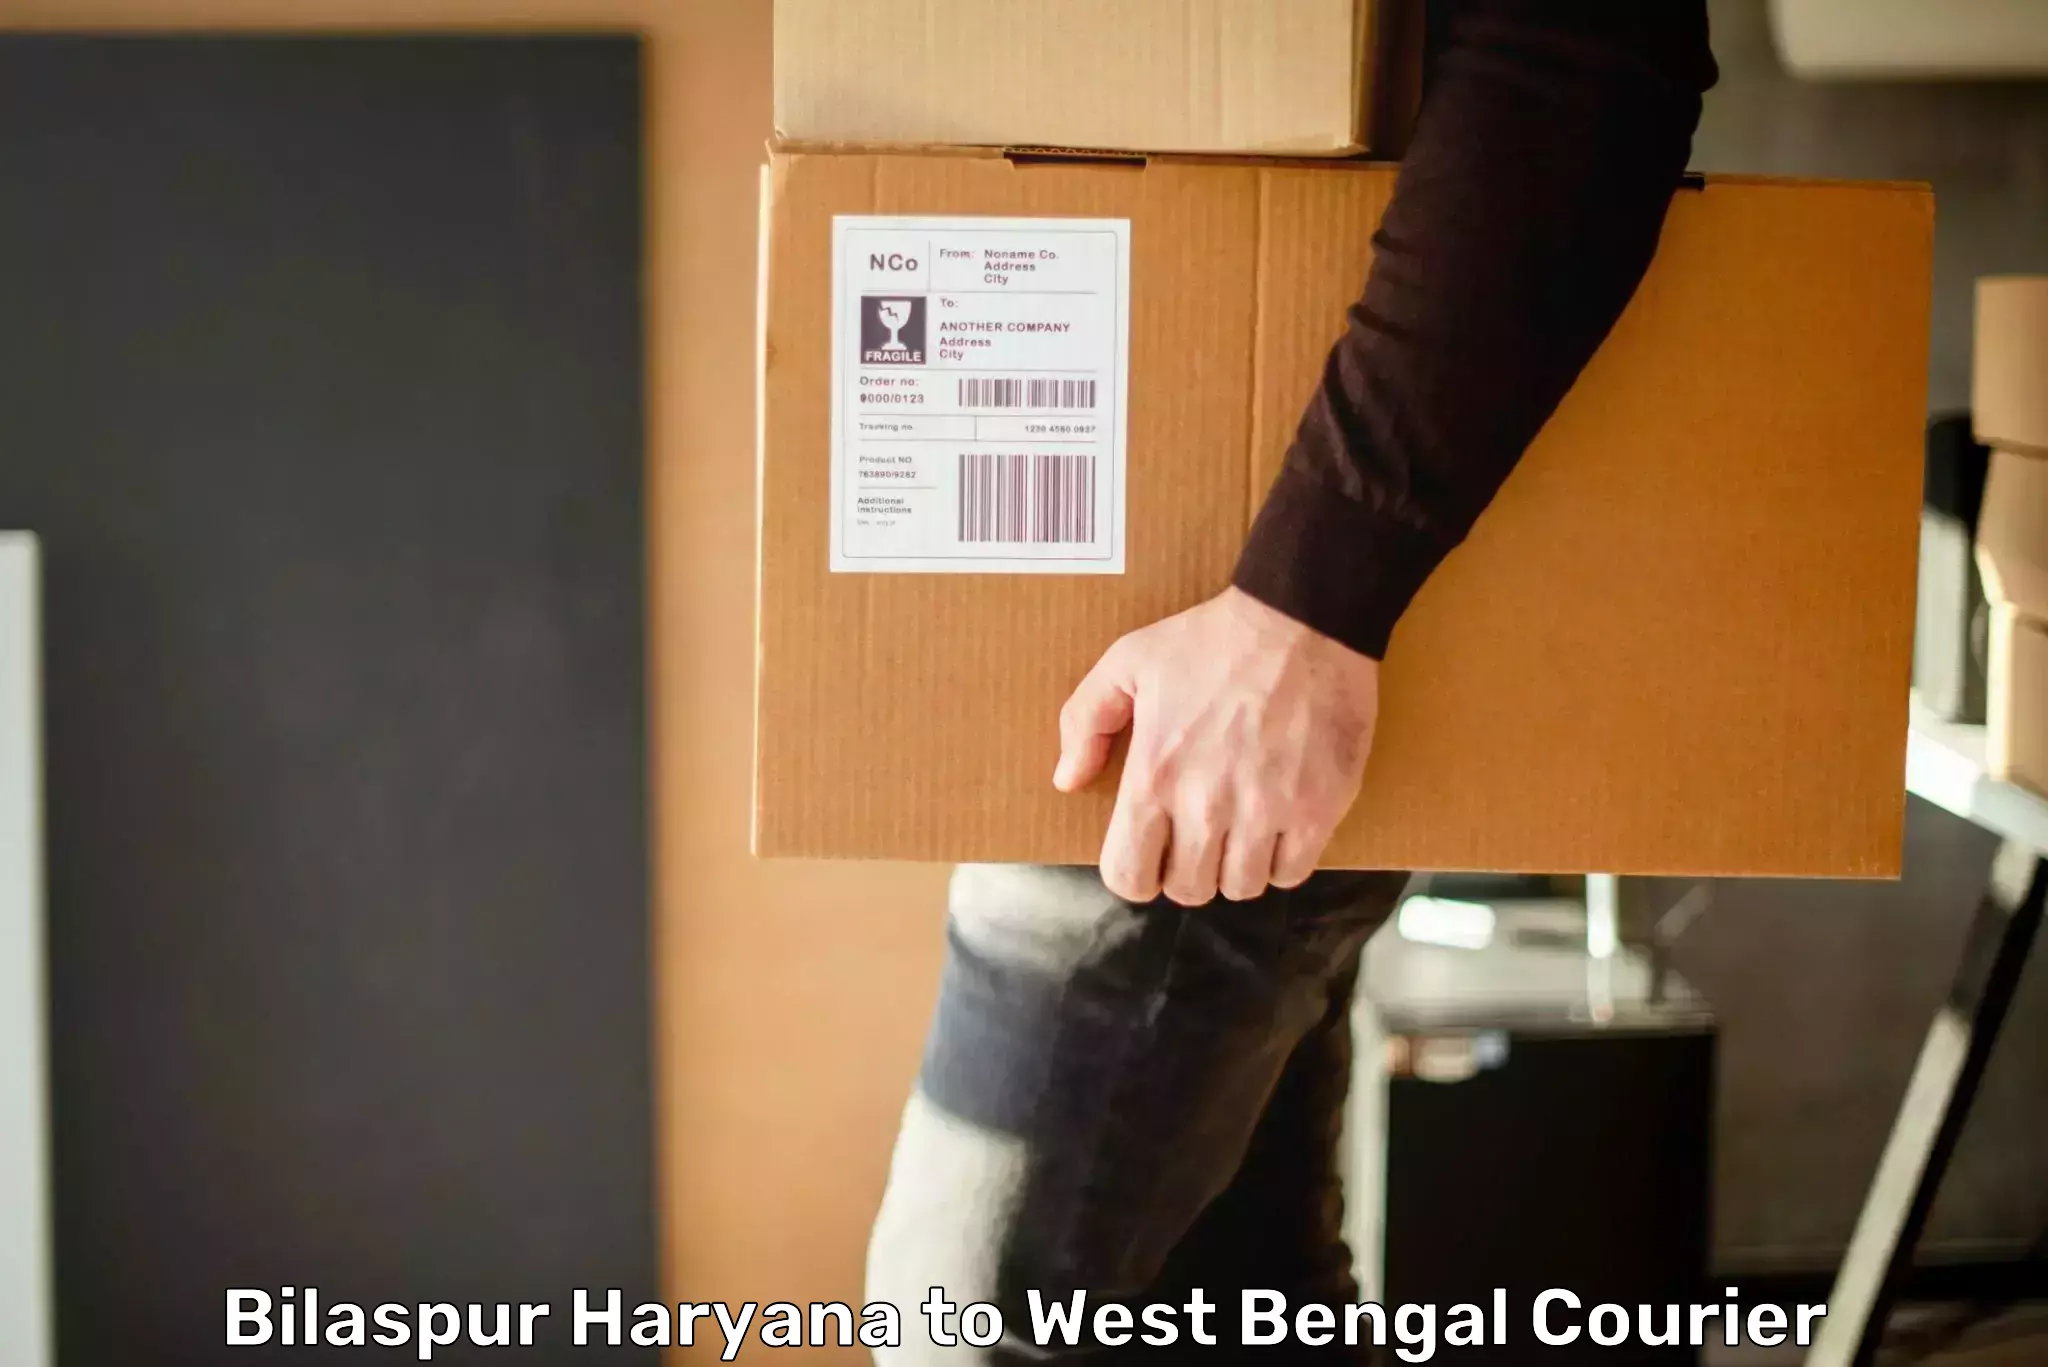 Express courier capabilities Bilaspur Haryana to Helencha